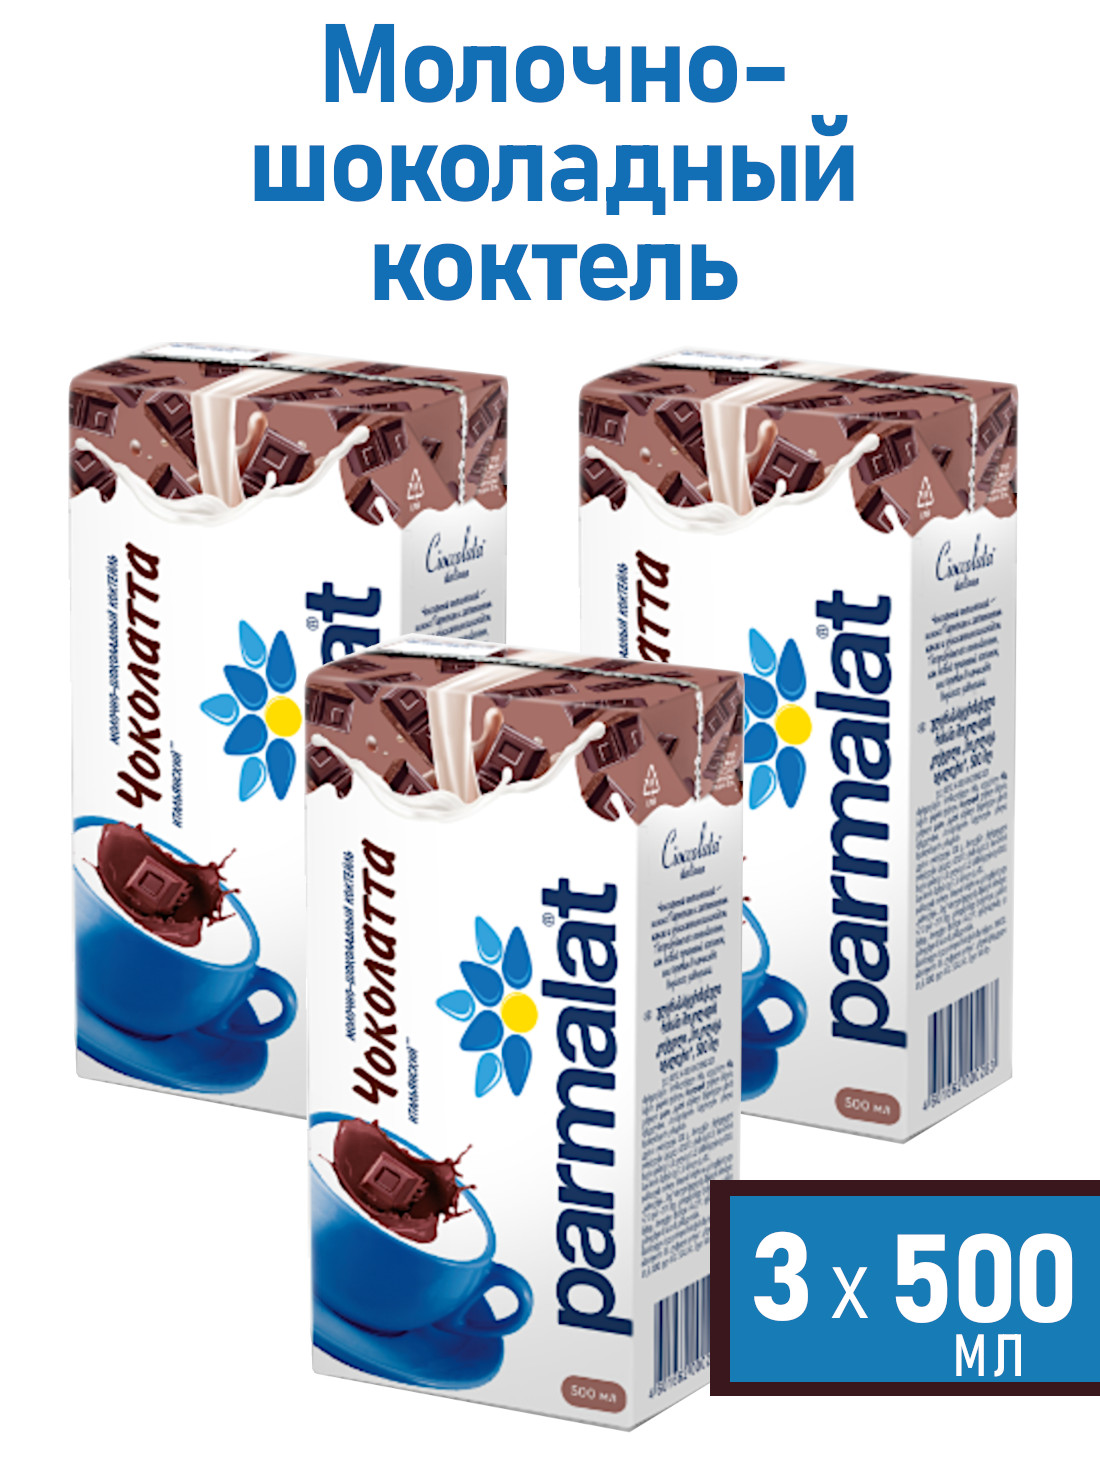 Молочный коктейль Parmalat безлактозный Comfort Чоколатта, 500 мл х 3 шт - купить в ООО "Хелптумама.ру", цена на Мегамаркет